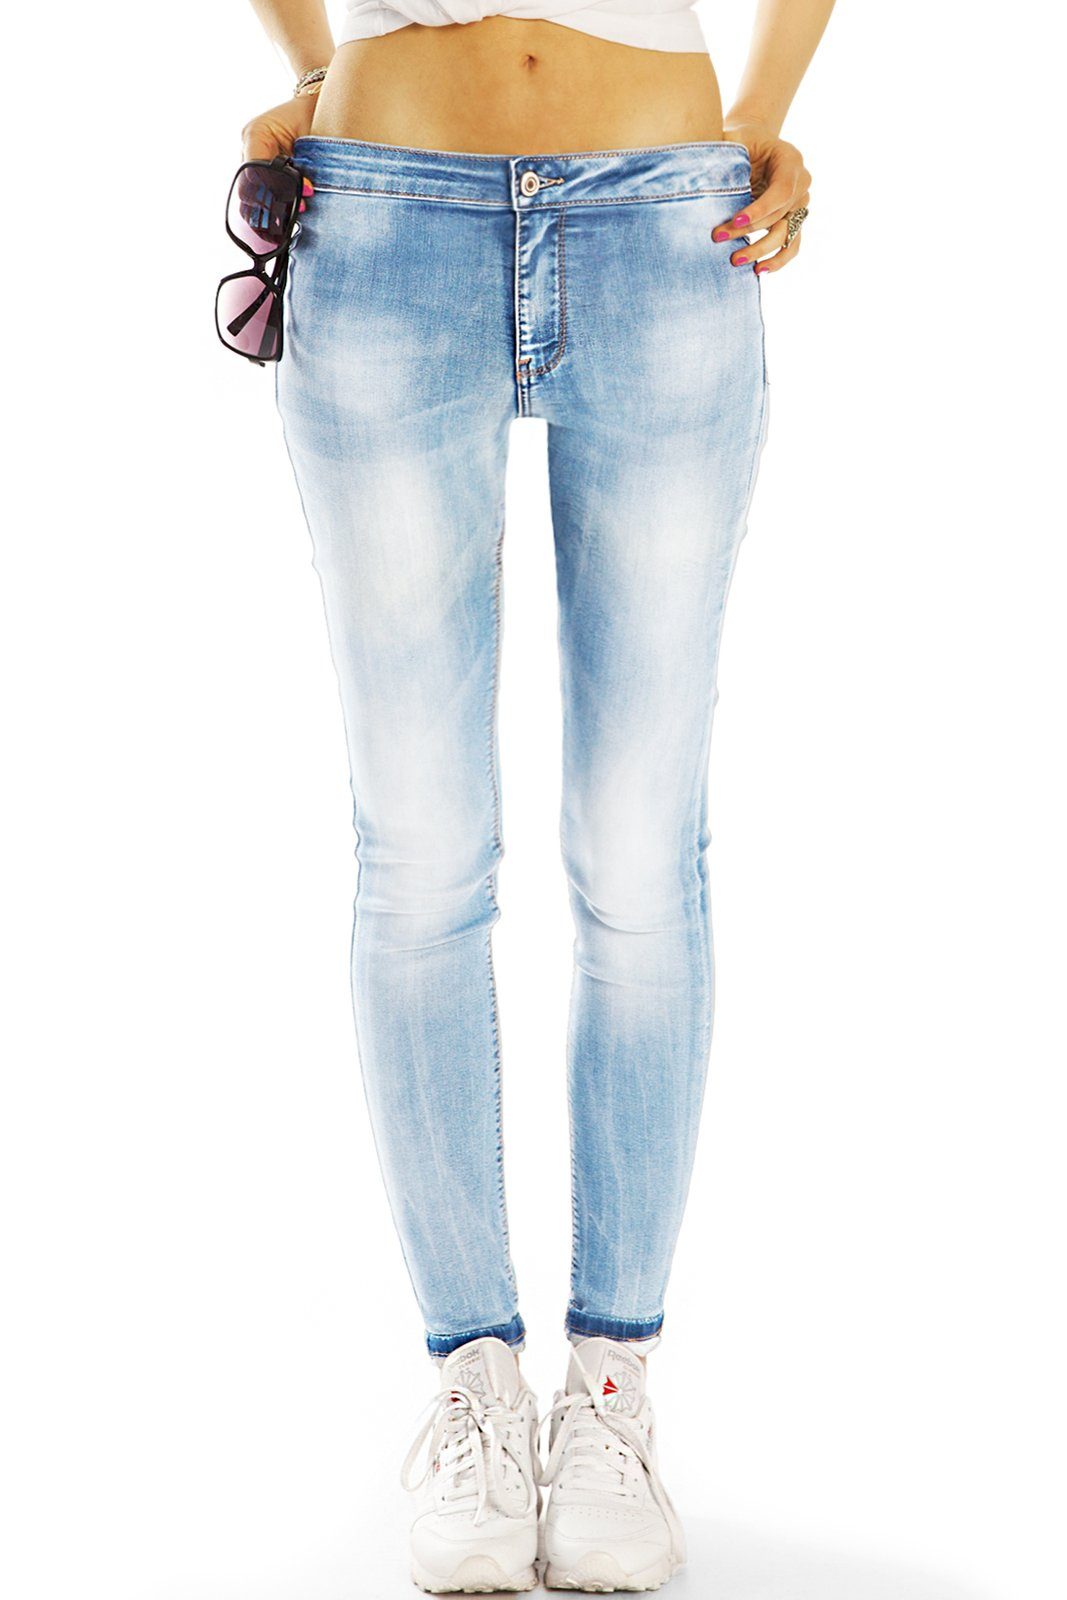 be styled Skinny-fit-Jeans Medium Waist Röhrenjeans enge Slim Fit Hose - Damen - j33g mit Stretch-Anteil